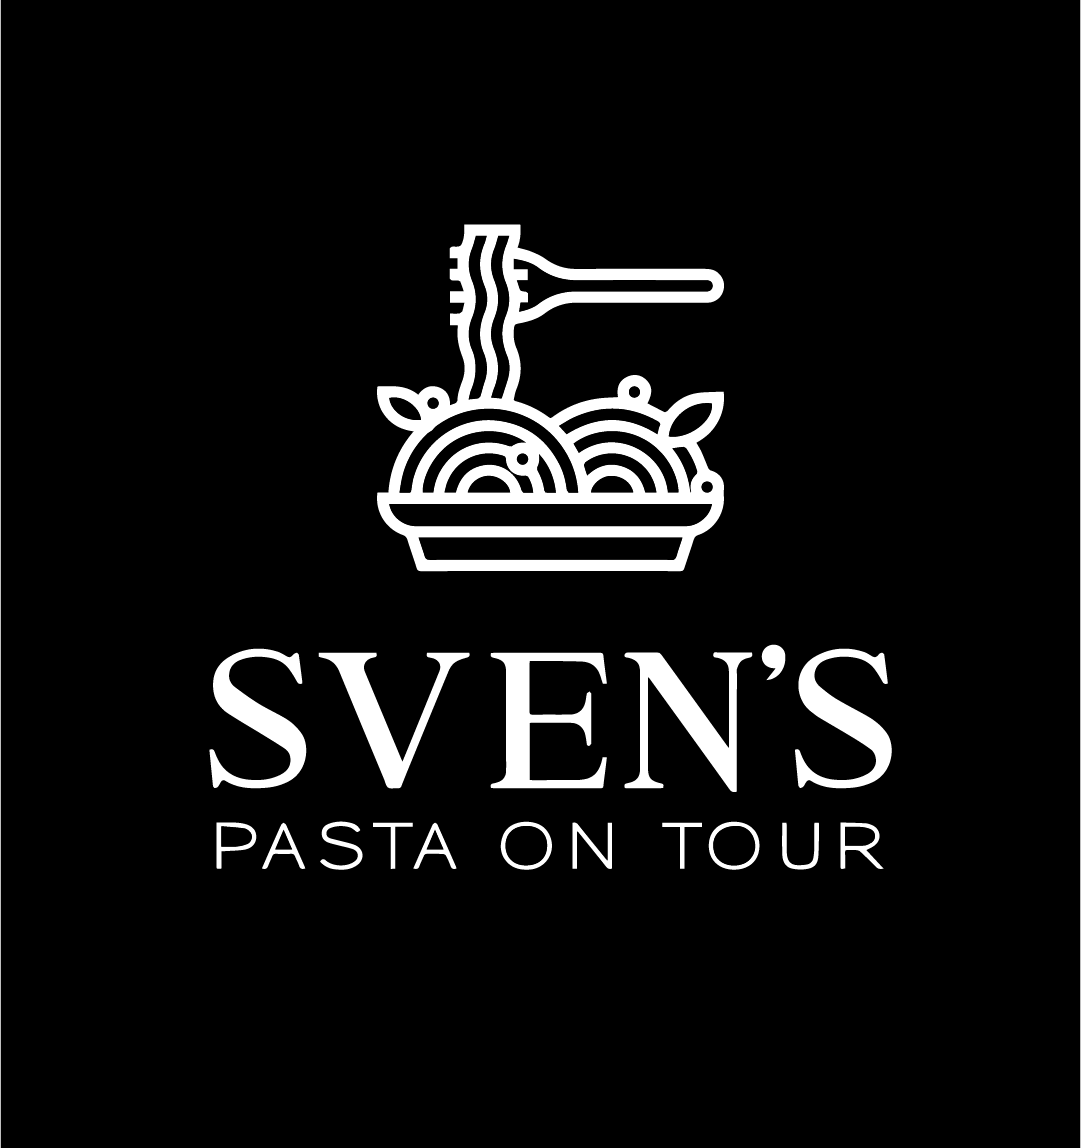 Sven's Pasta on Tour